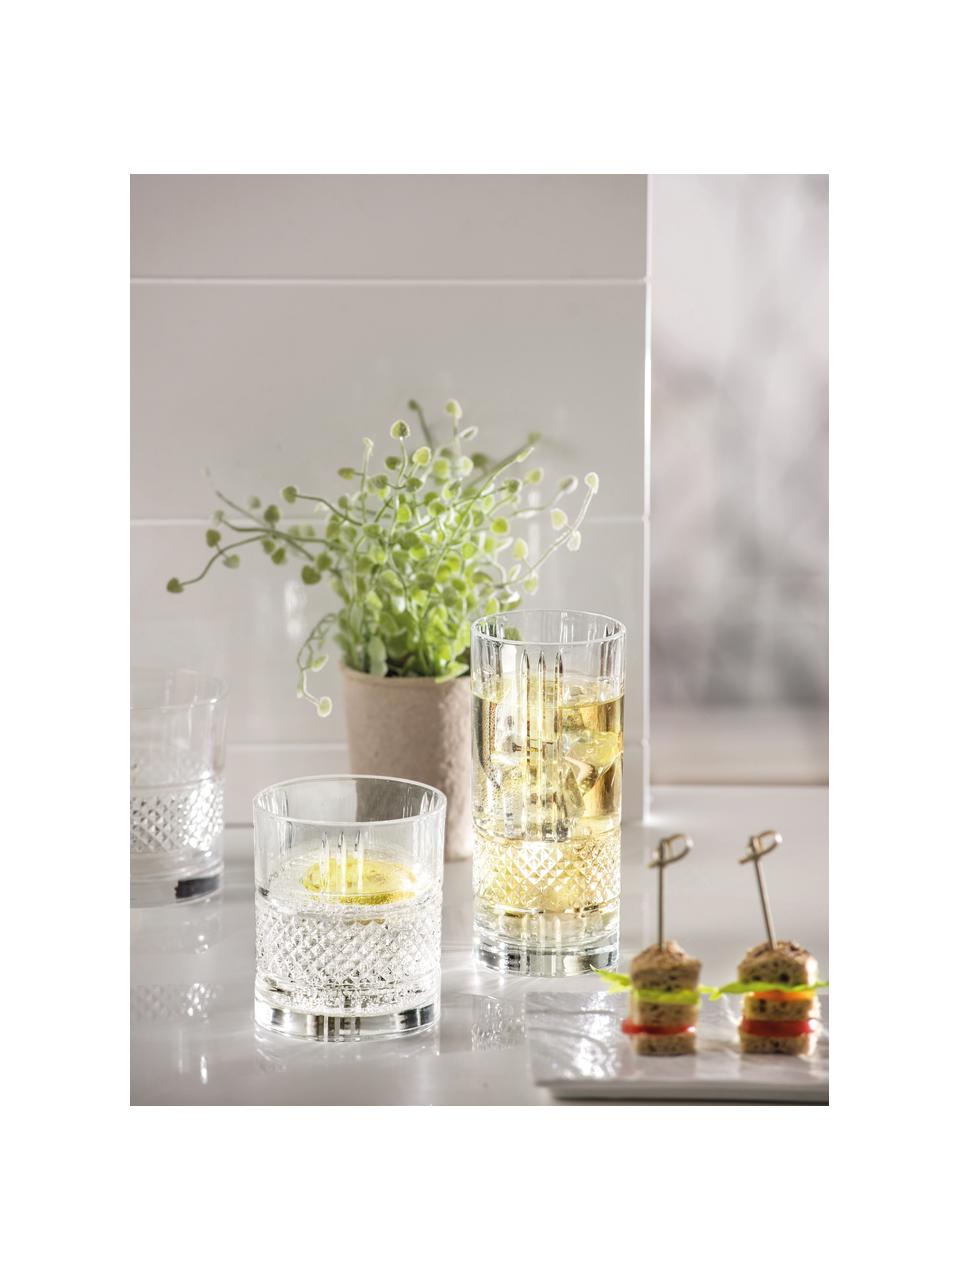 Bicchieri in cristallo con rilievo Brillante 6 pz, Cristallo, Trasparente, Ø 8 x Alt. 9 cm, 340 ml